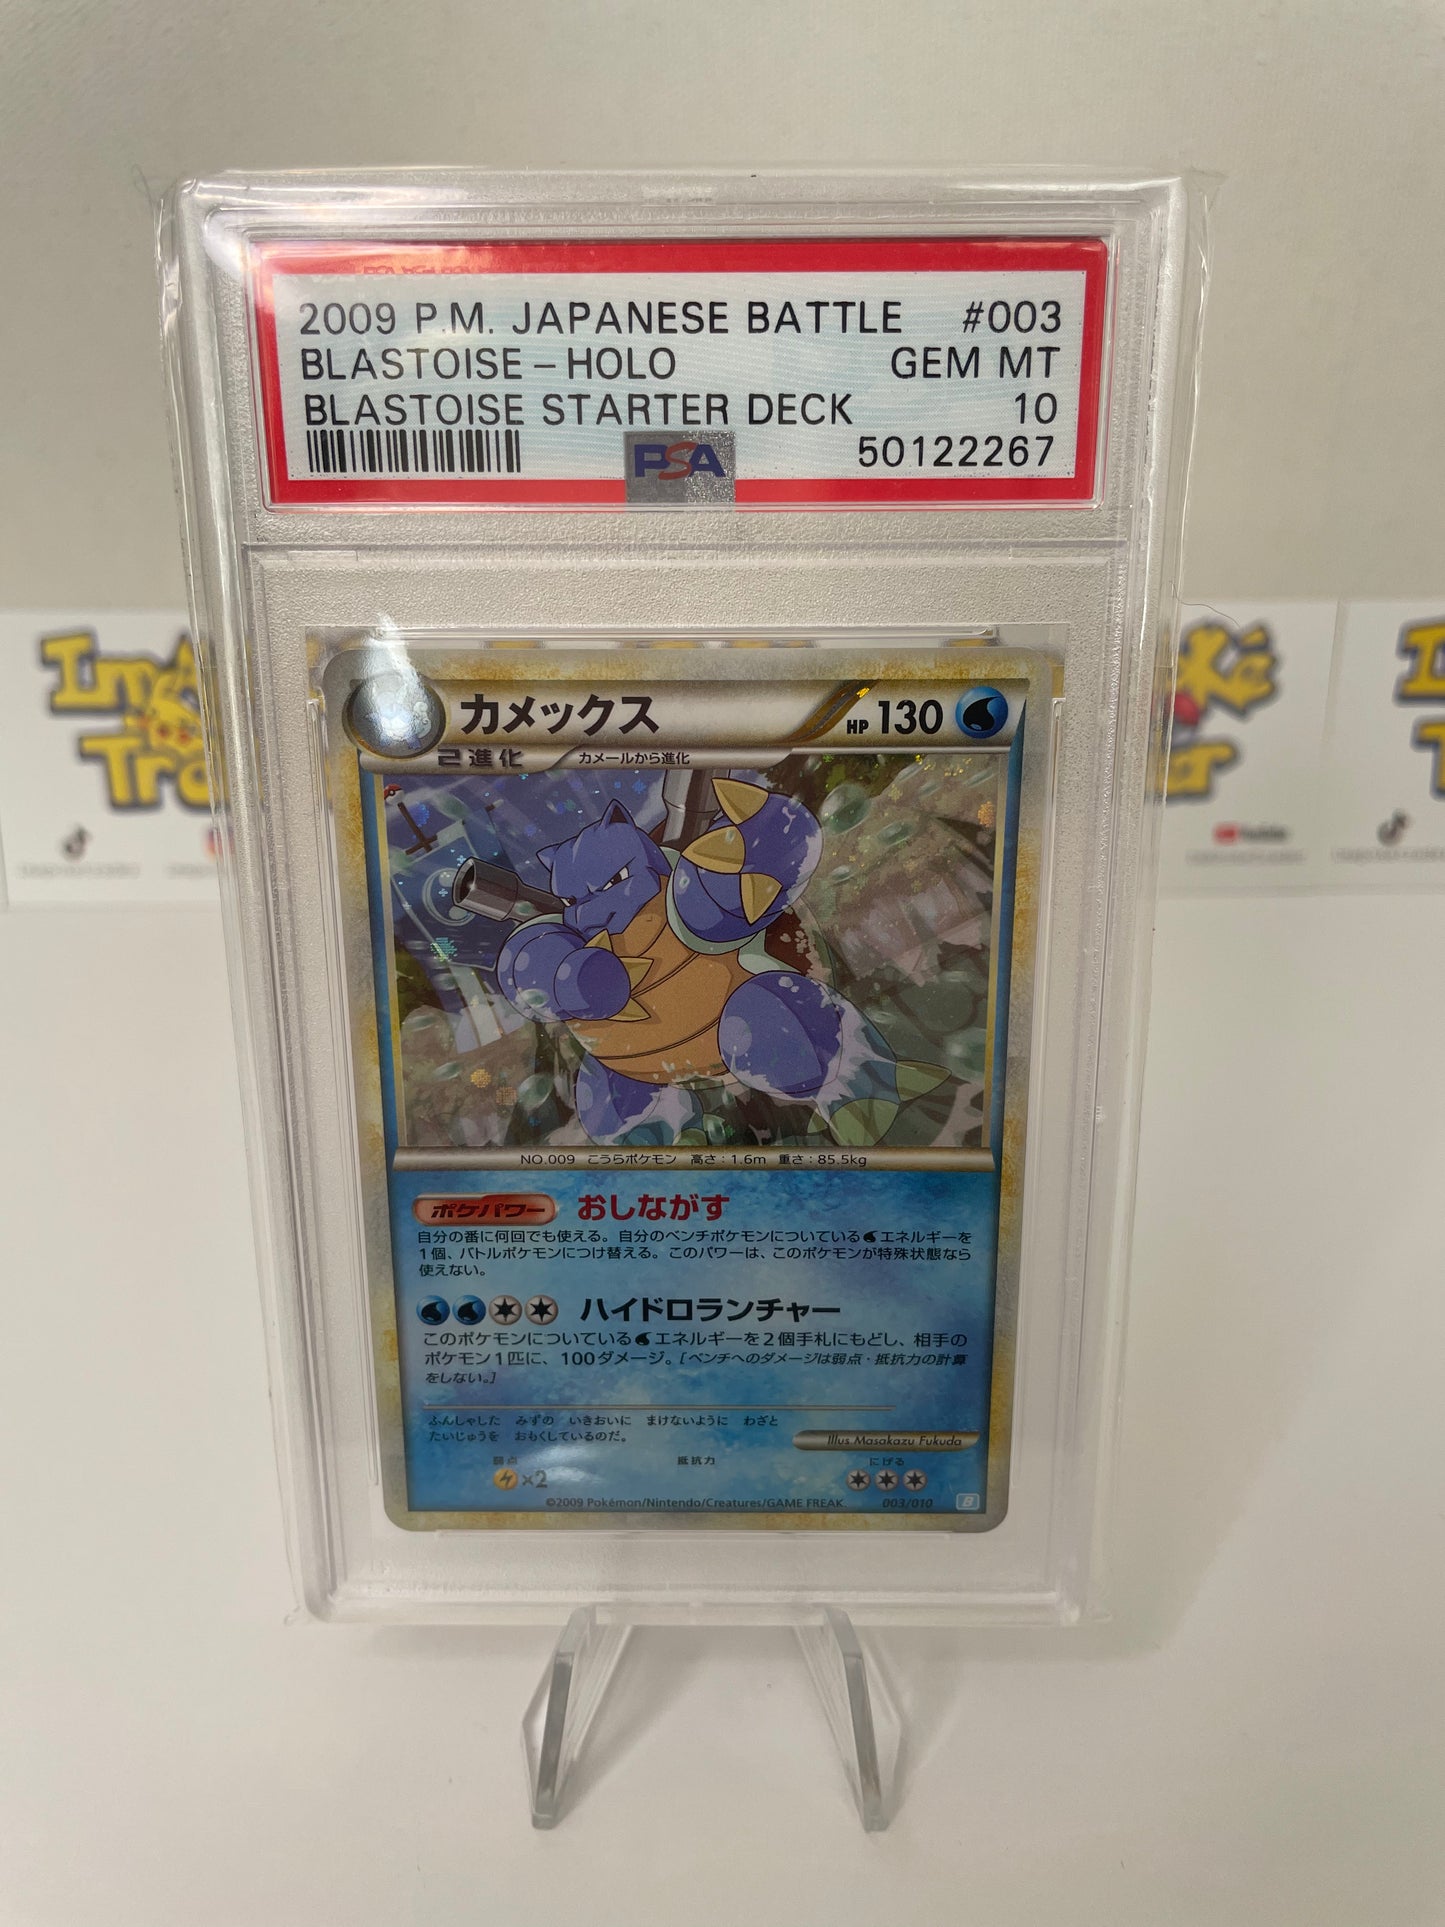 Blastoise 003/010 B Battle Starter Deck Holo Promo Pokemon Card Japanese PSA 10